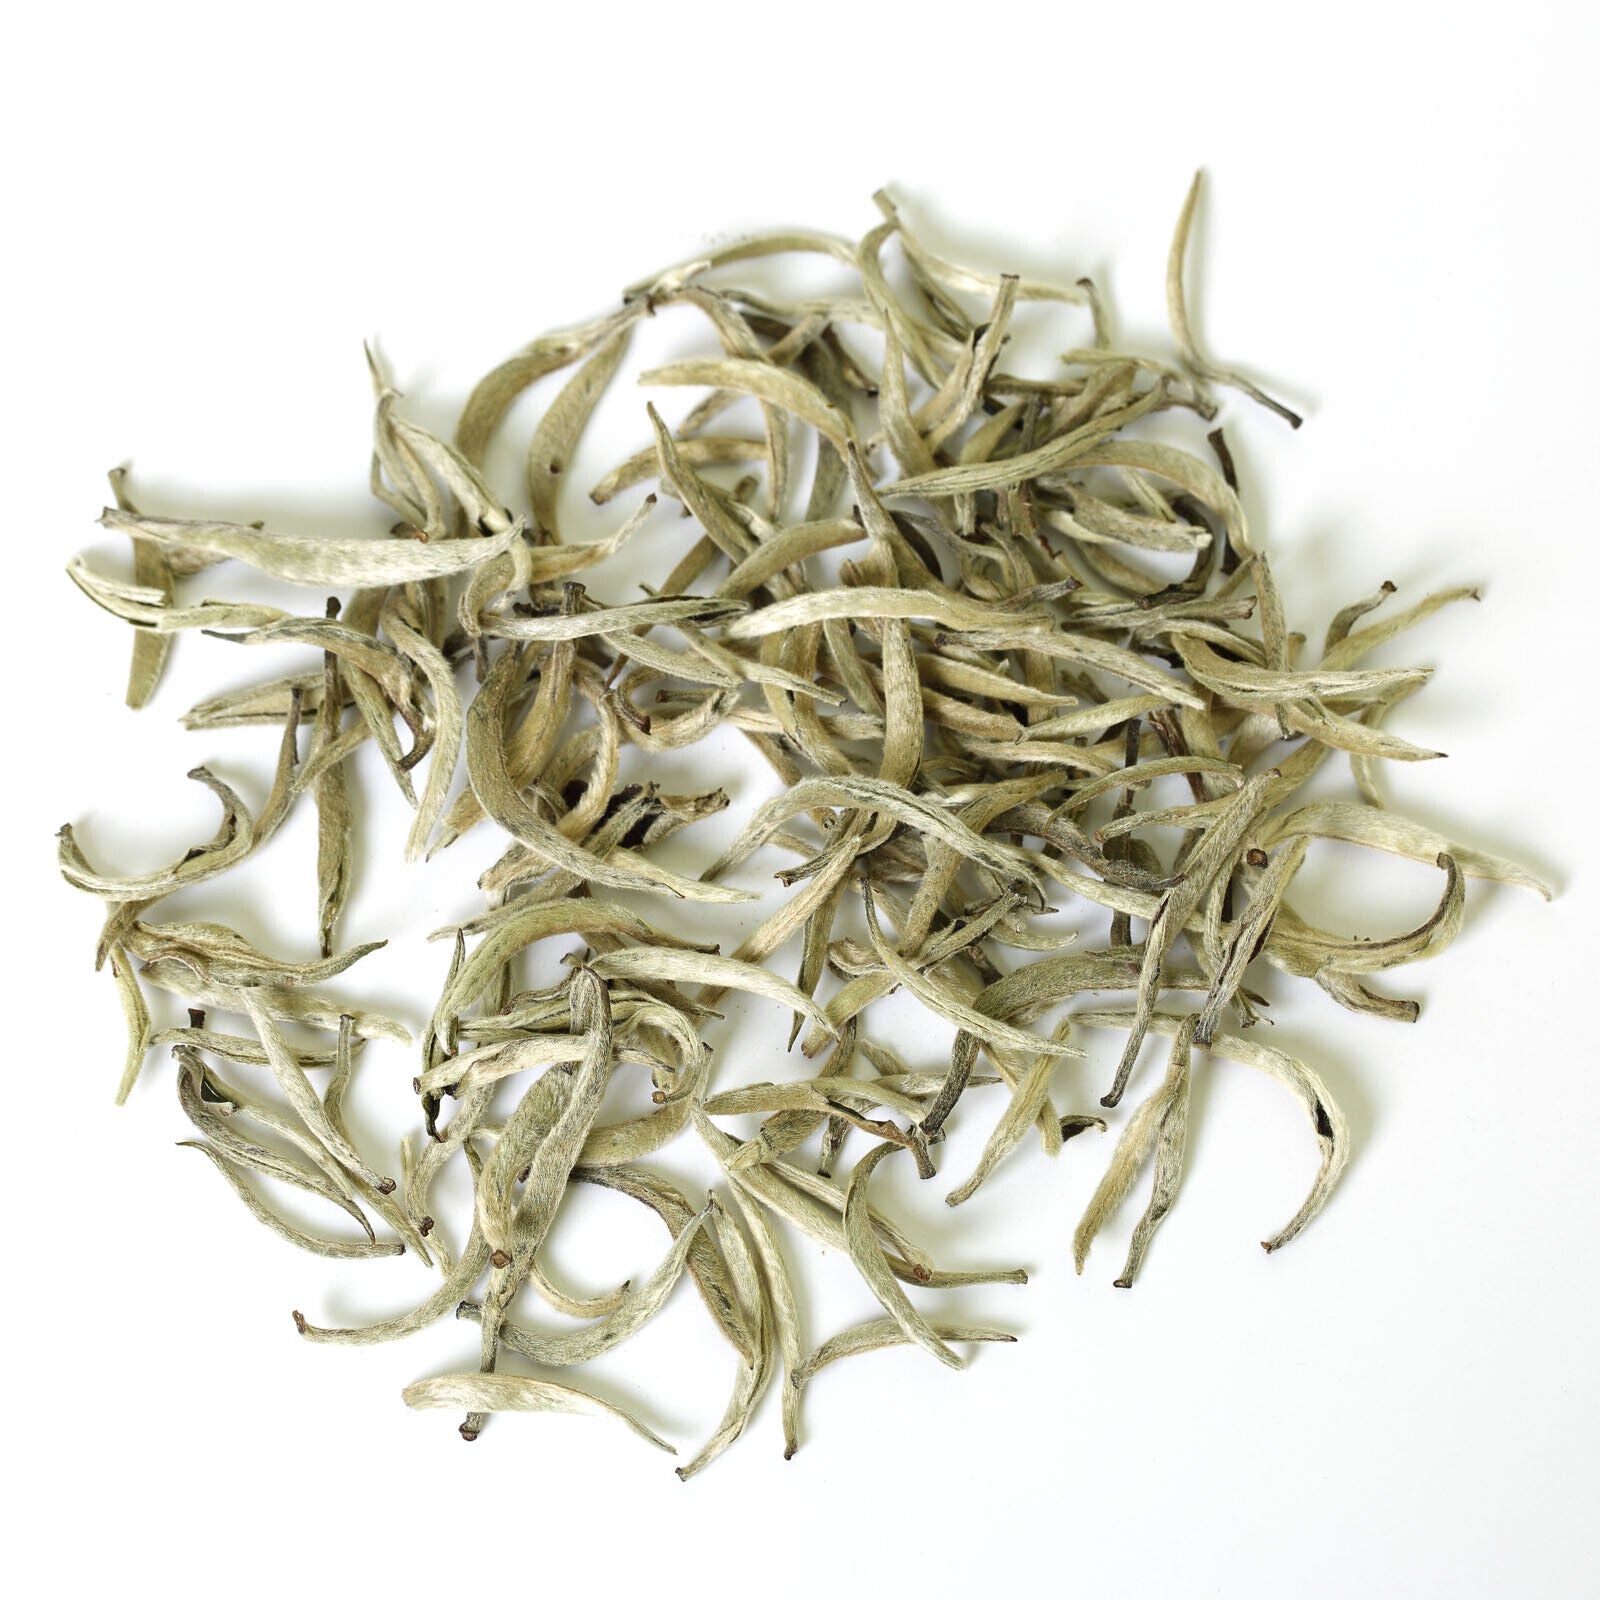 HelloYoung 250g Premium Silver Needle White Tea Bai hao Yin zhen Chinese Tips Loose